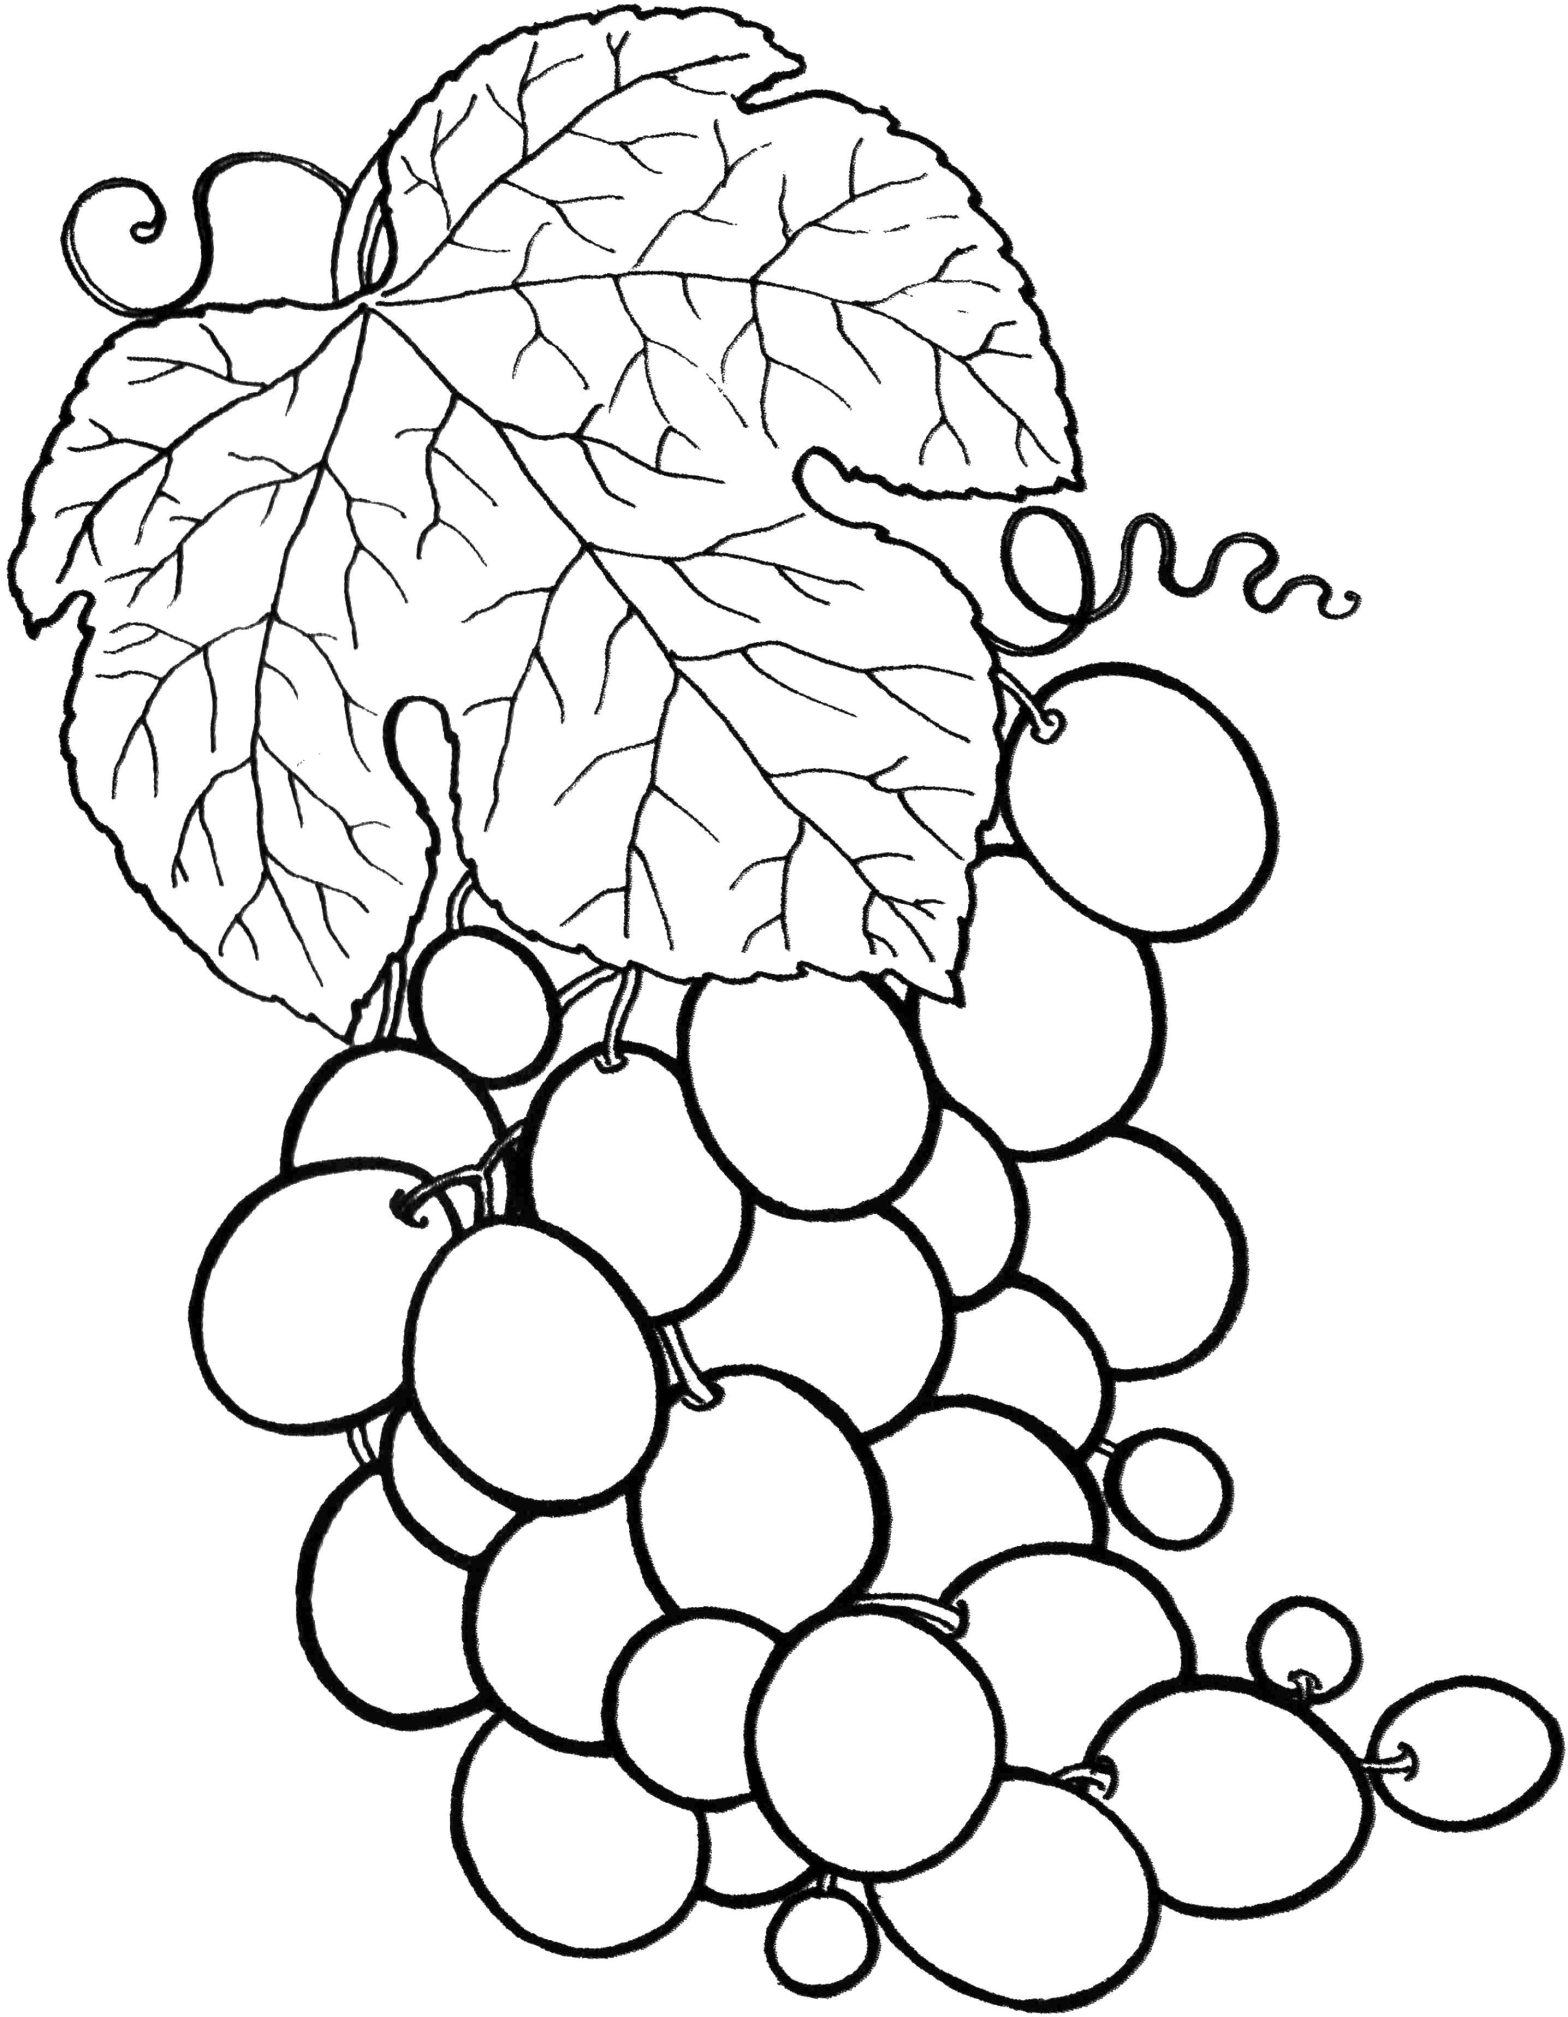 Раскраска виноград для детей (виноград)